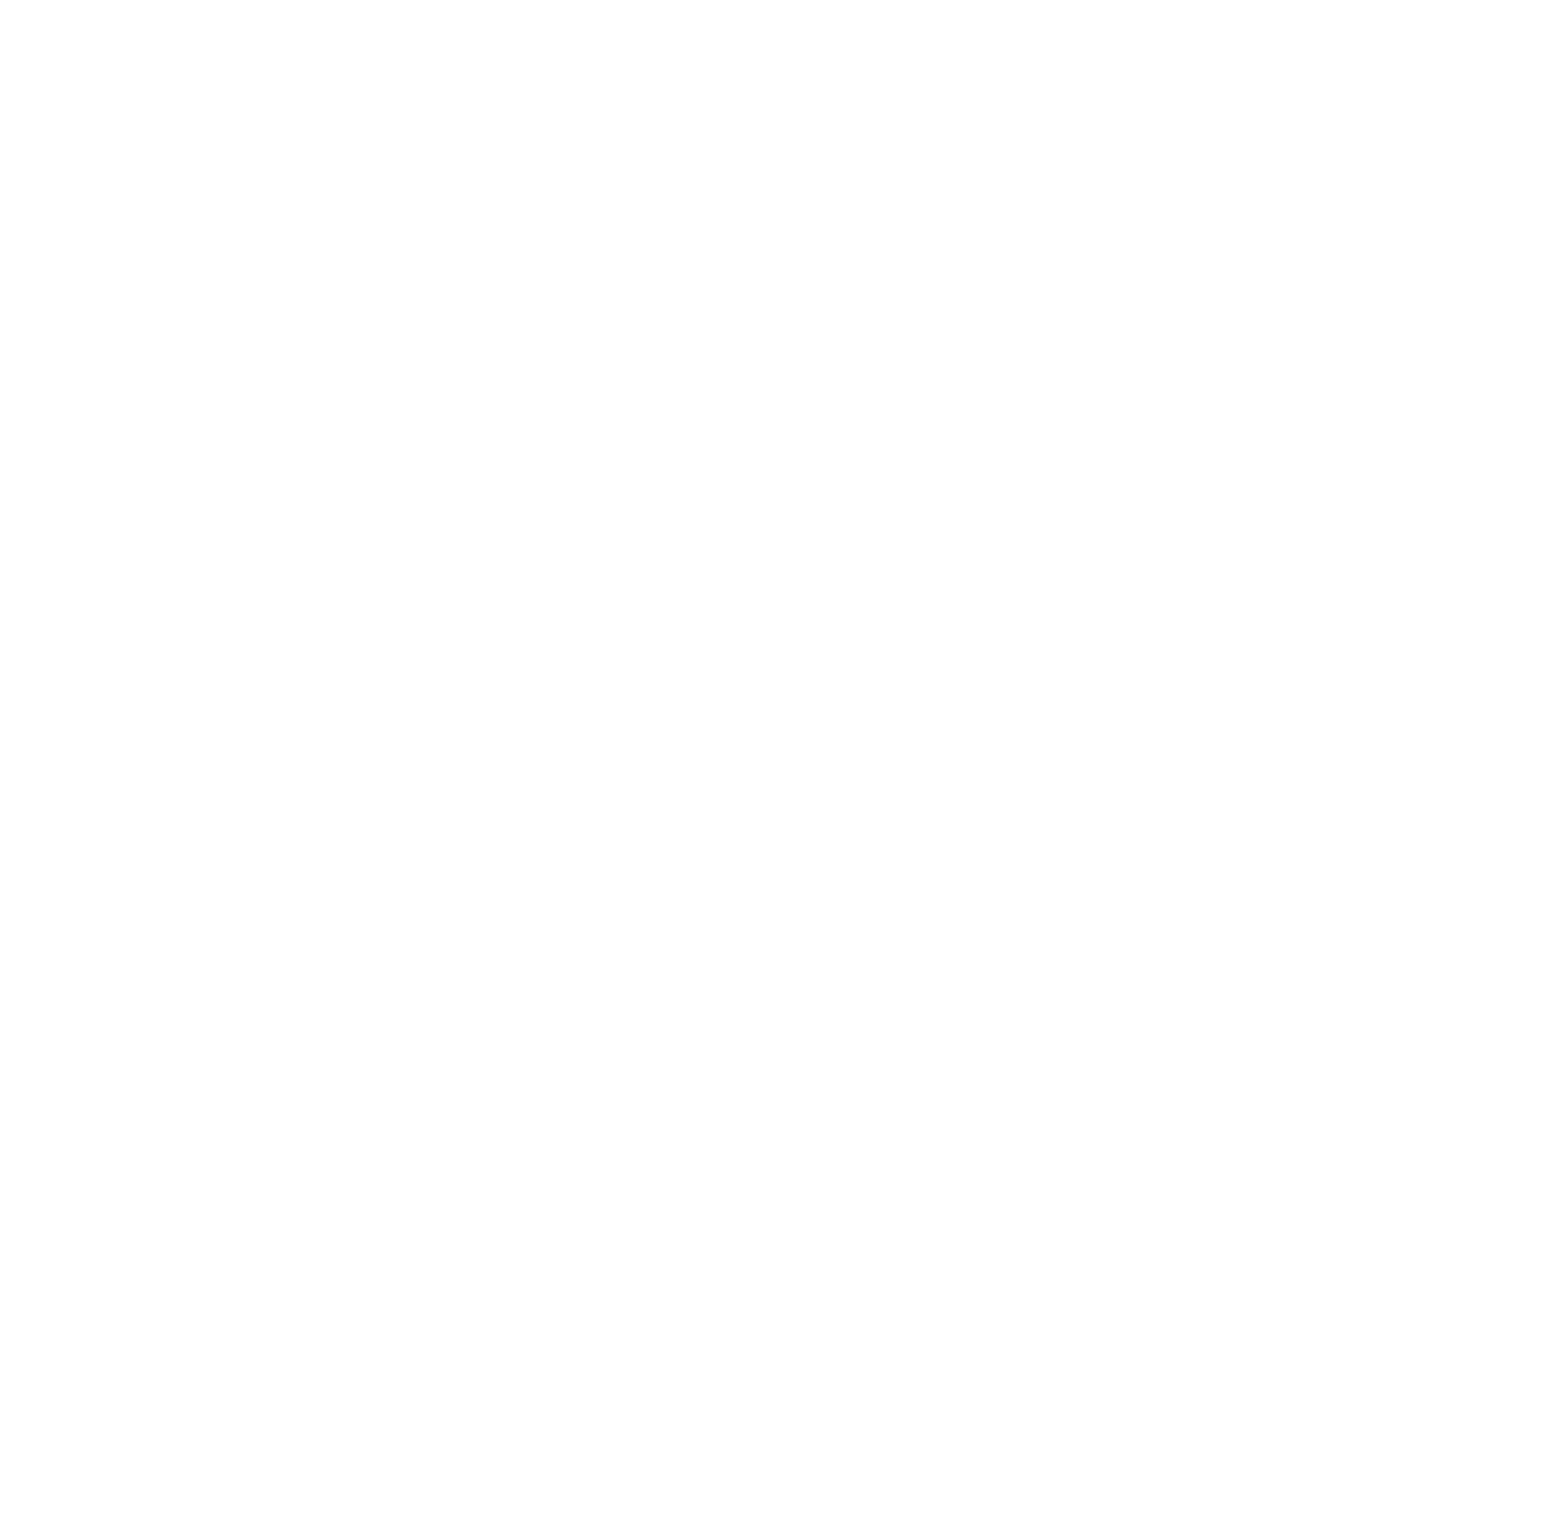 Immunovant logo pour fonds sombres (PNG transparent)